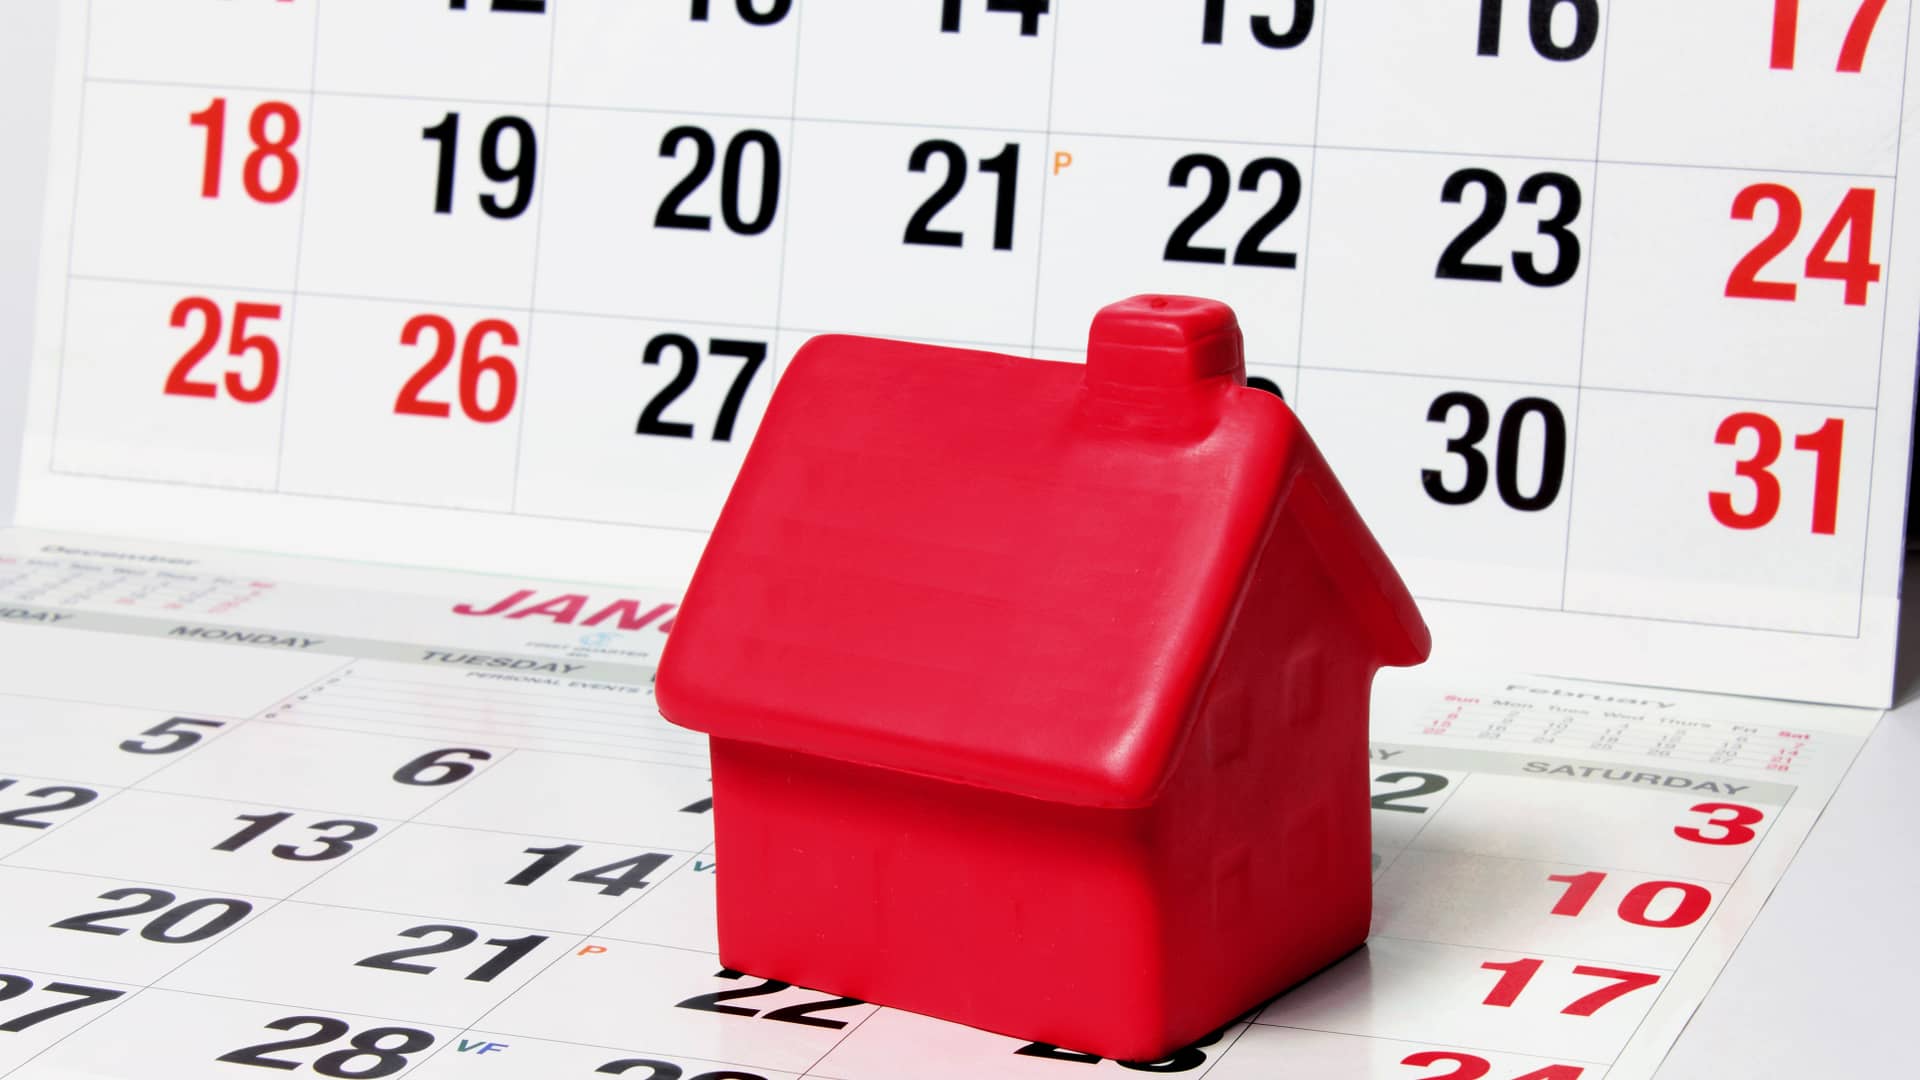 Casita roja de juguete sonbre un calendario para hablar de cuánto suelen tardar los bancos en conceder la hipoteca